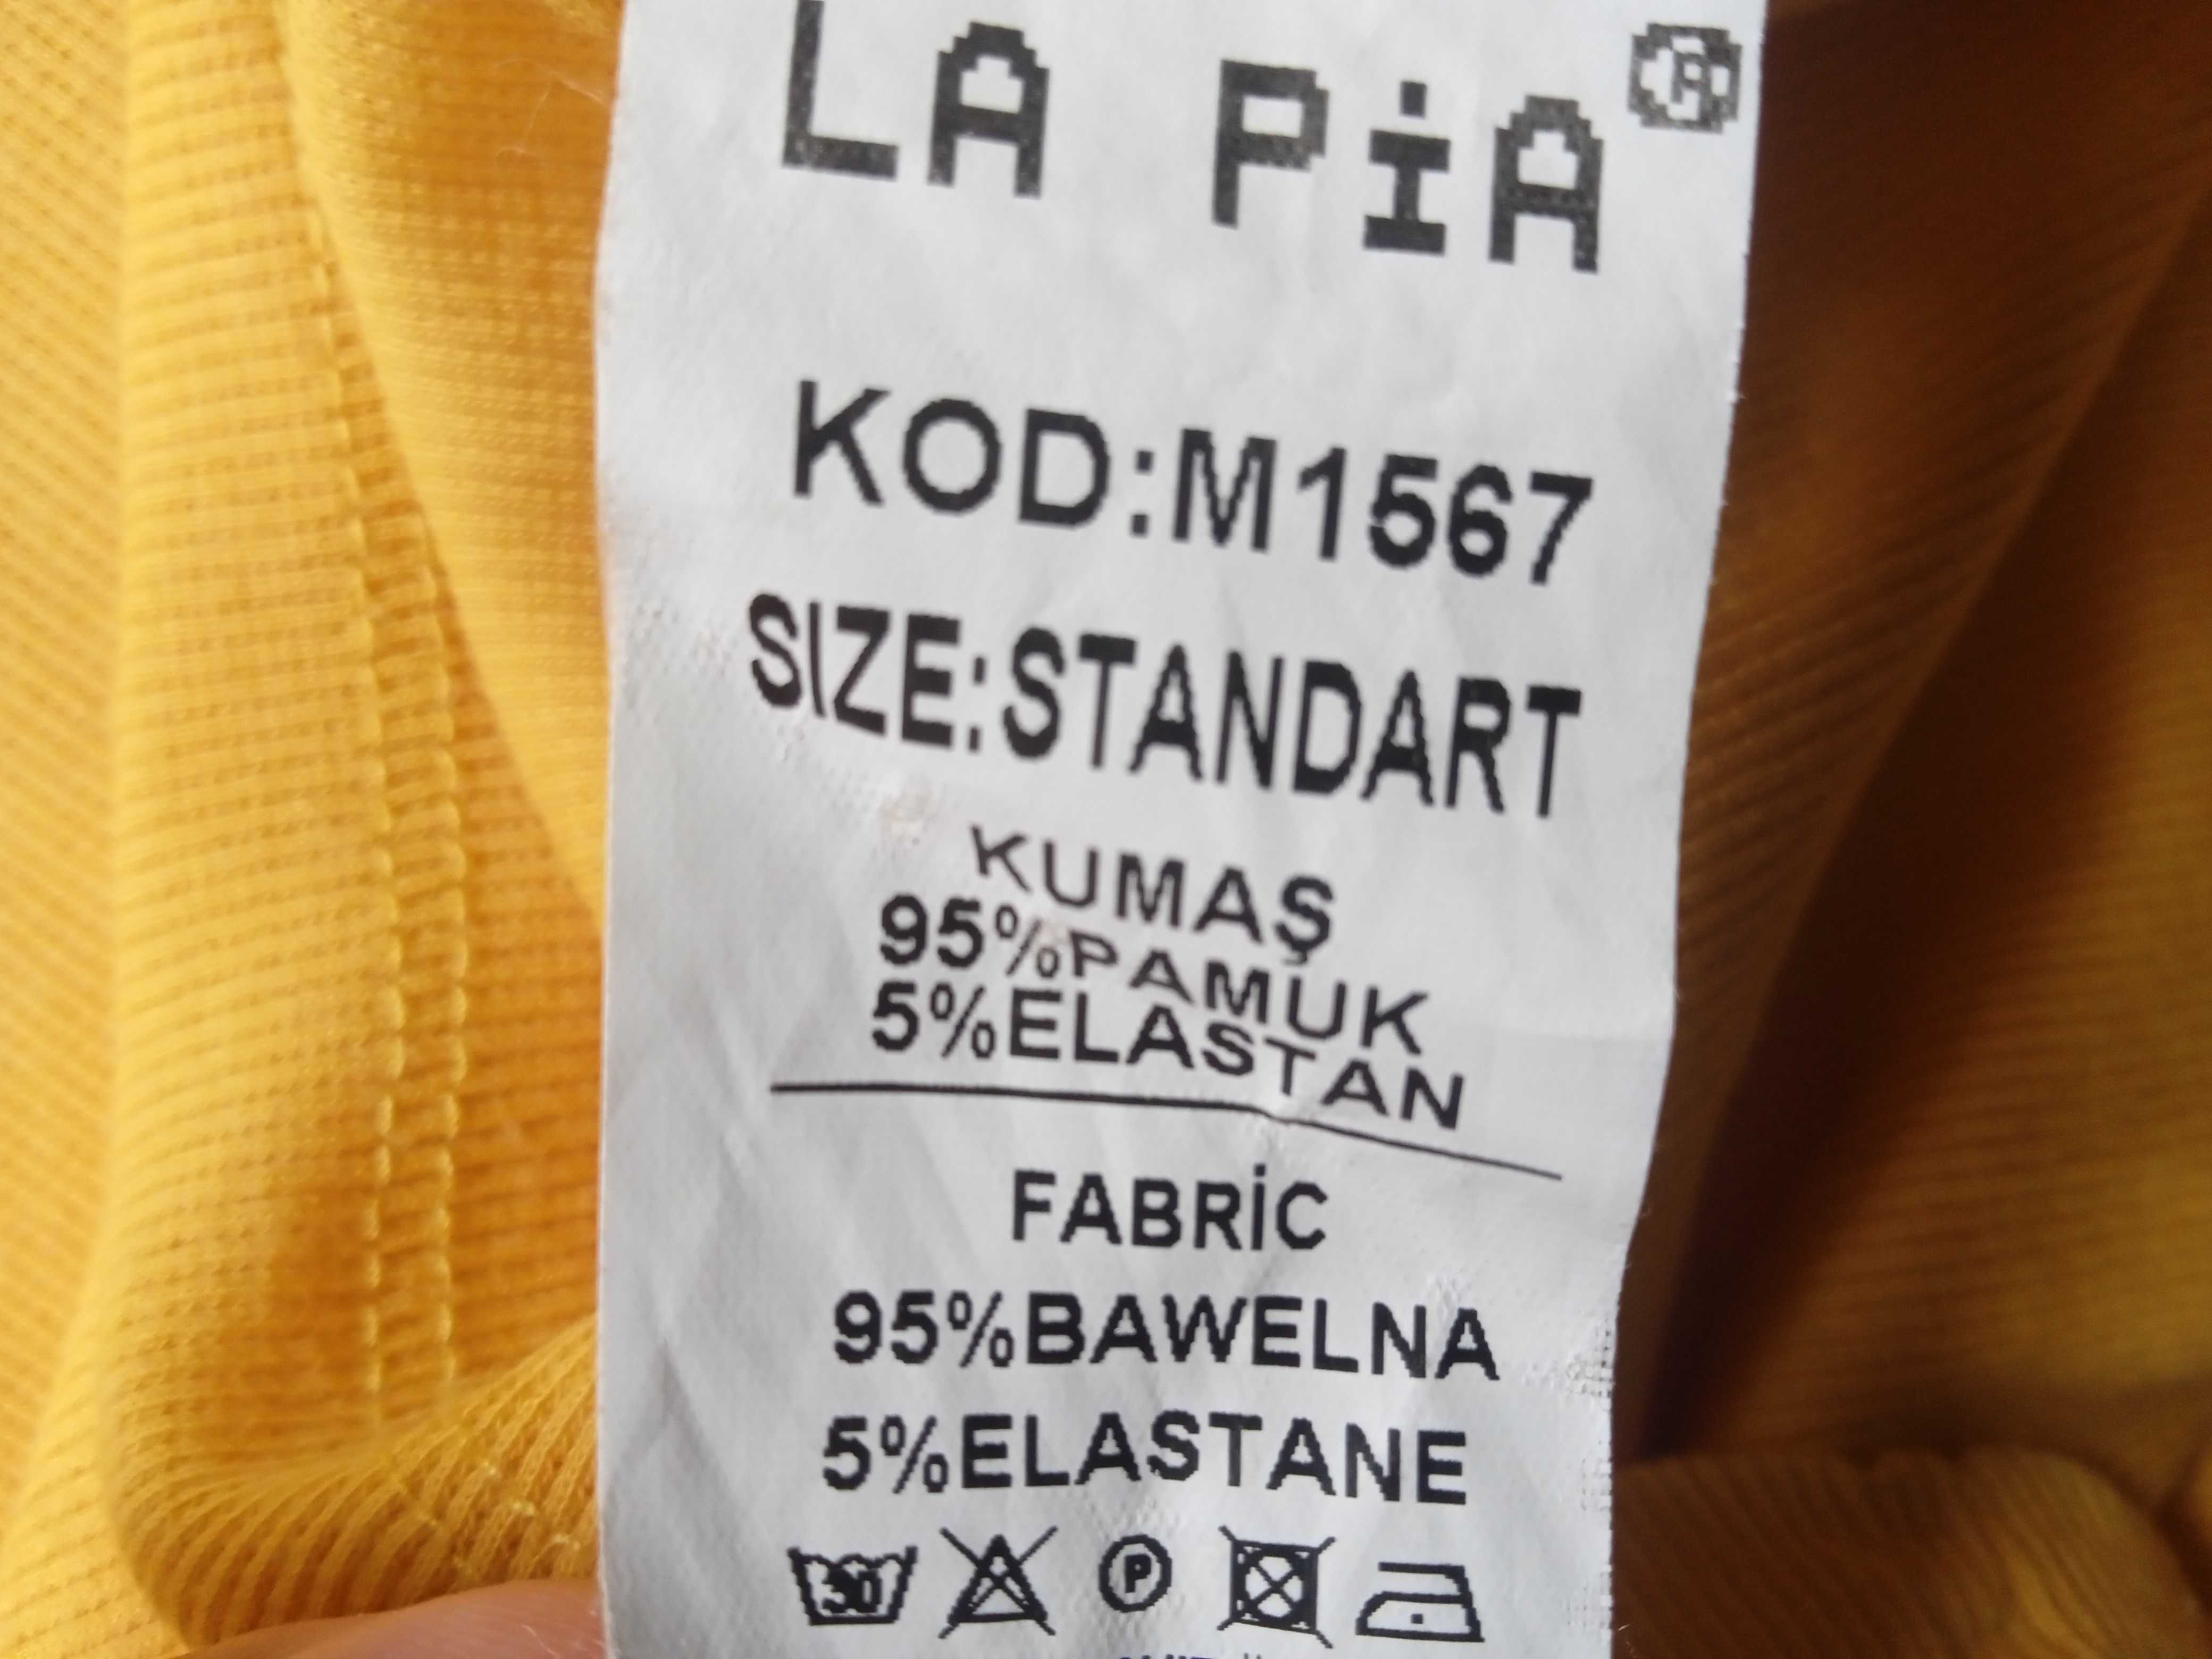 La Pia prążkowana 36 95% bawełna